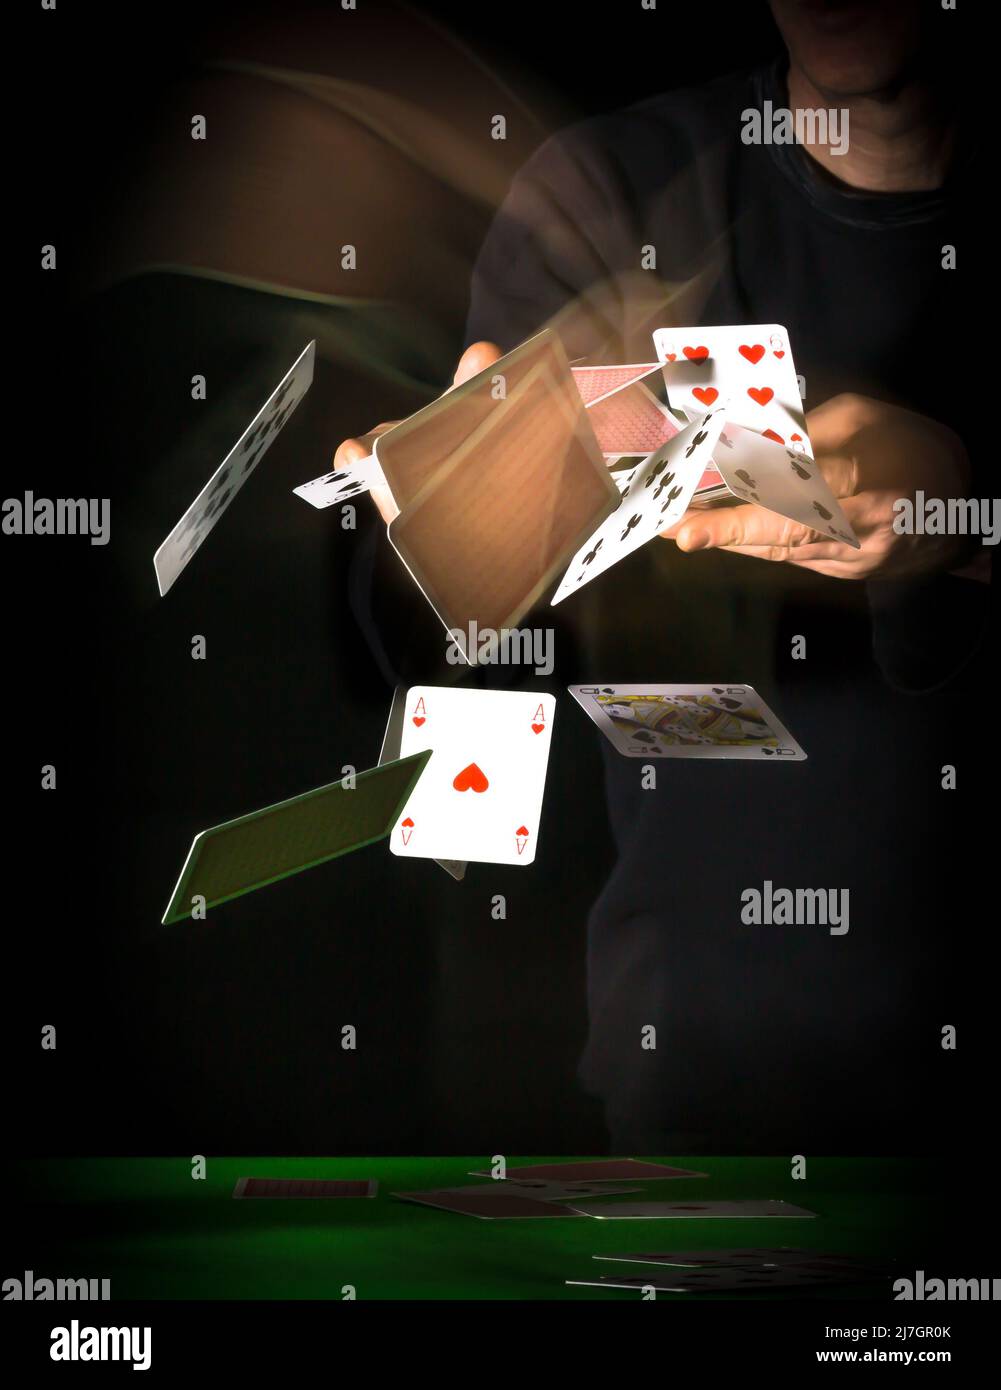 Spielkarten werden ausgeteilt oder geworfen und fliegen mit Bewegungsspuren auf schwarzem Hintergrund durch die Luft Stockfoto